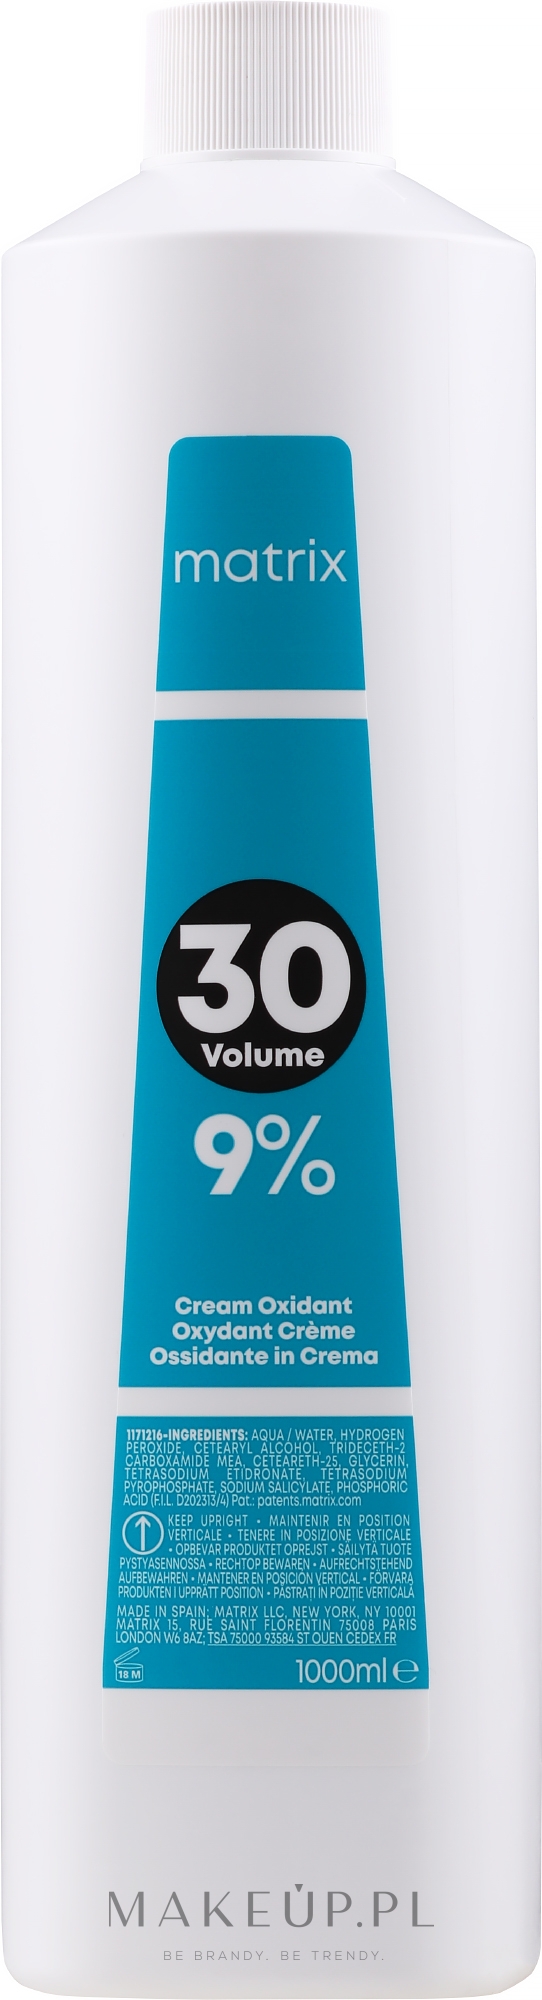 Oksydant w kremie - Matrix Cream Developer 30 Vol. 9 % — Zdjęcie 1000 ml